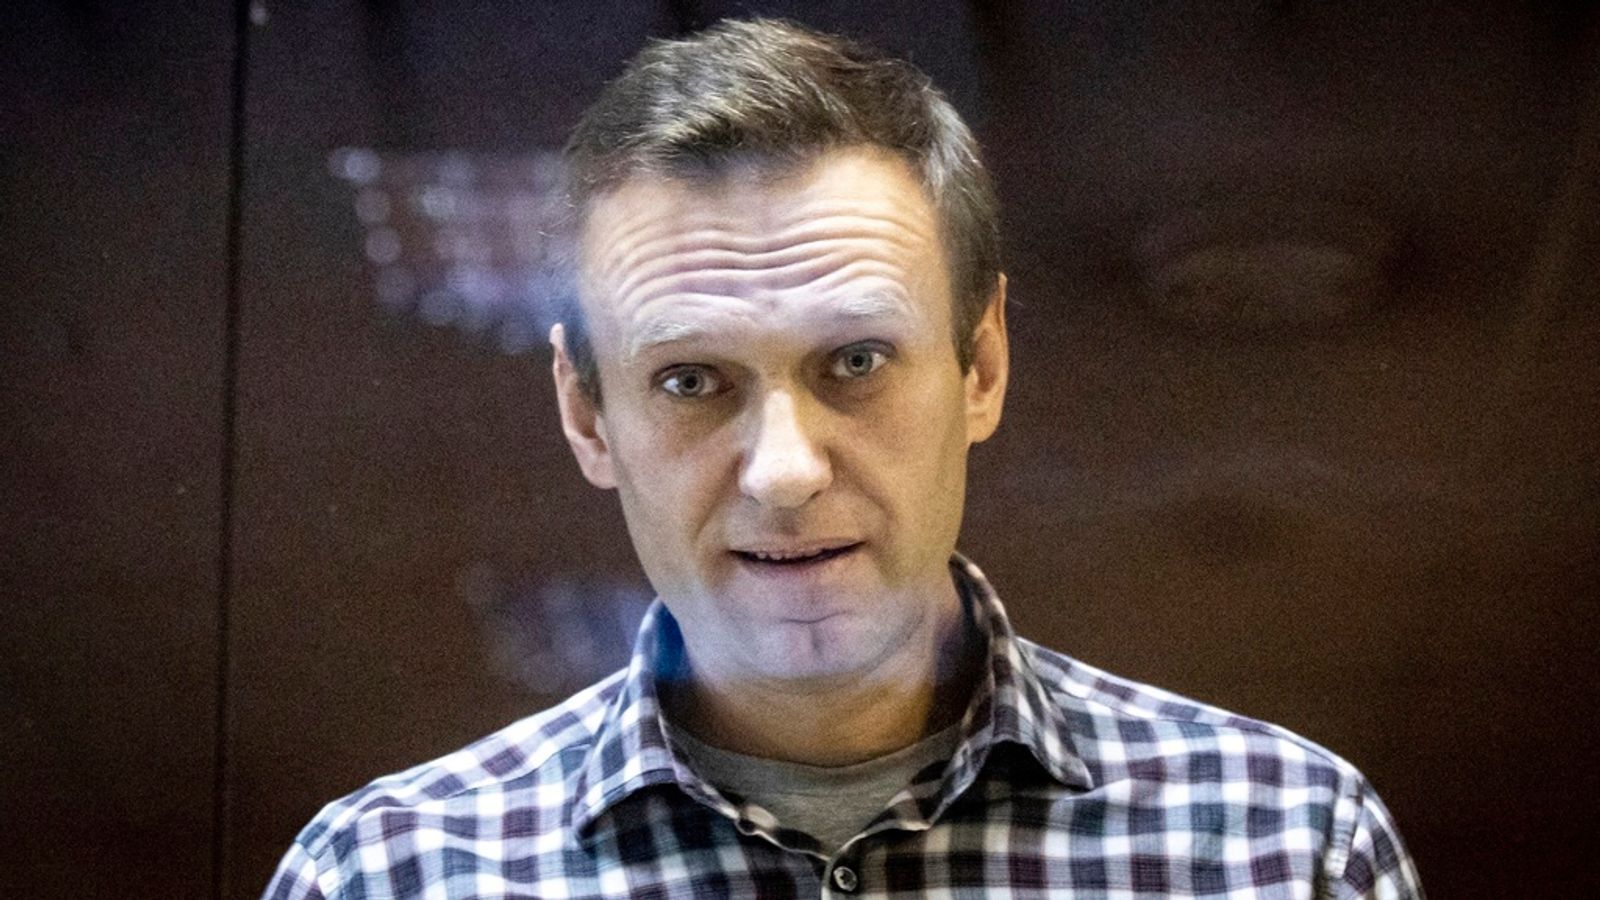 Основният политически опонент на Владимир Путин Алексей Навални е „изчезнал“ след извеждането му от руската затворническа колония